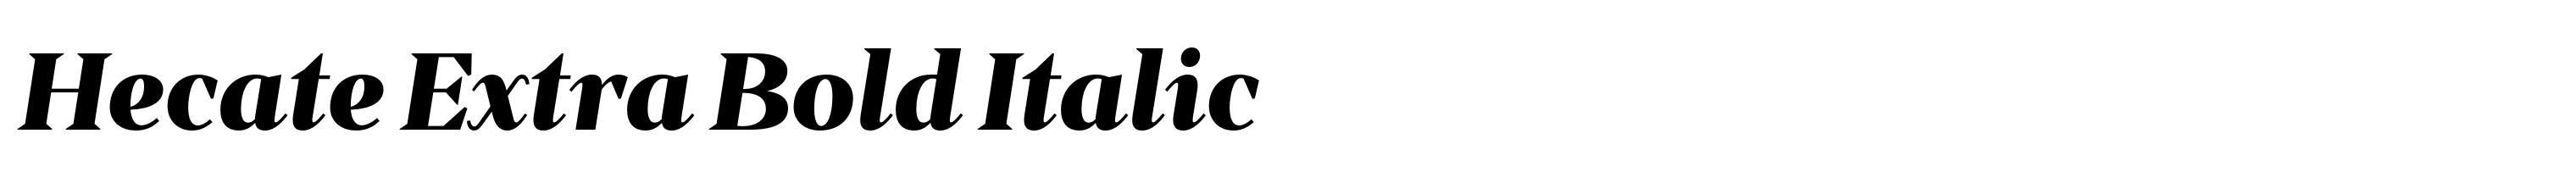 Hecate Extra Bold Italic